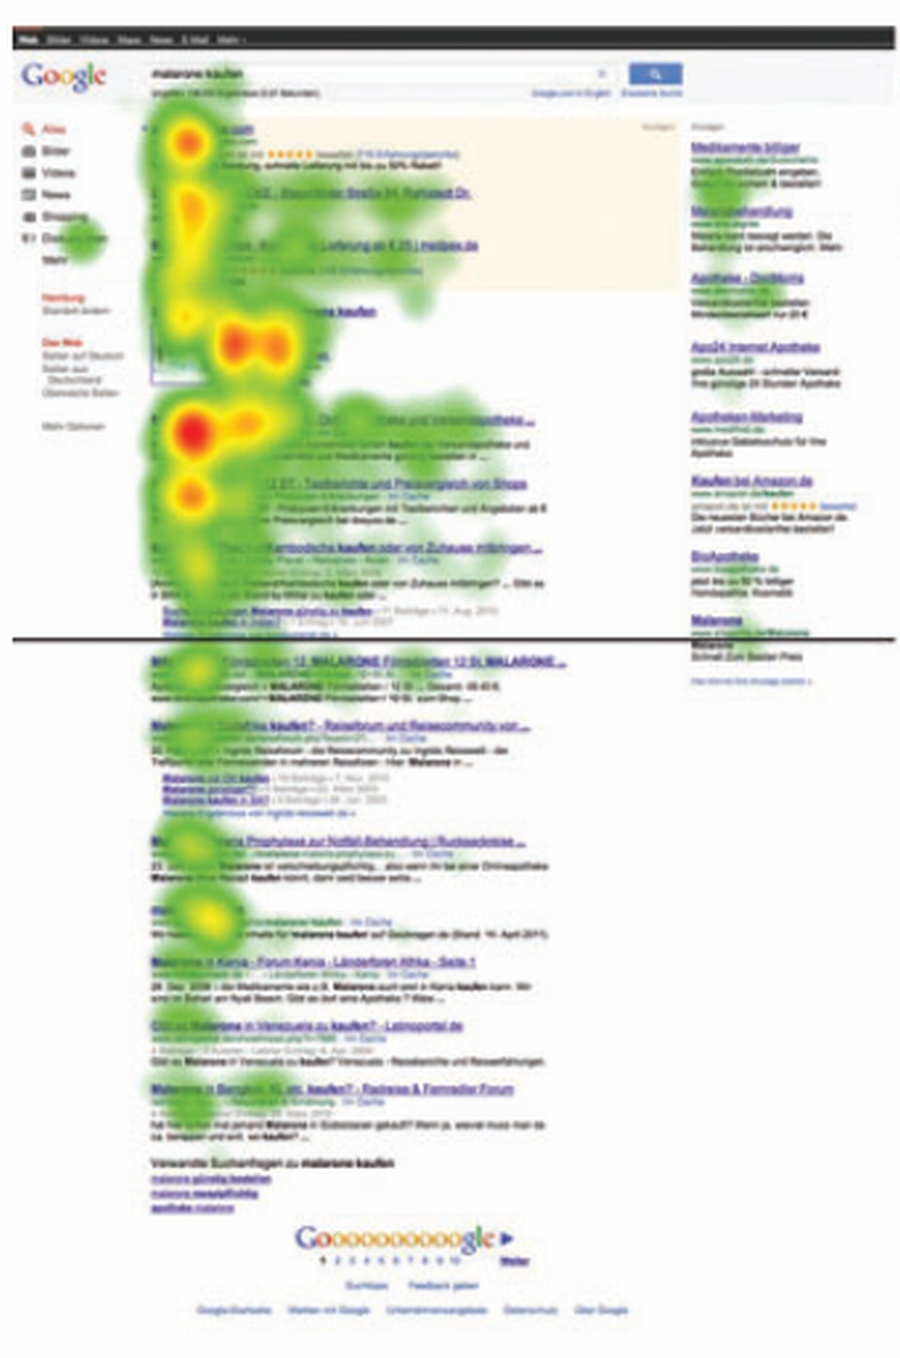 Studie zur Wahrnehmung der Google Suchergebnisse